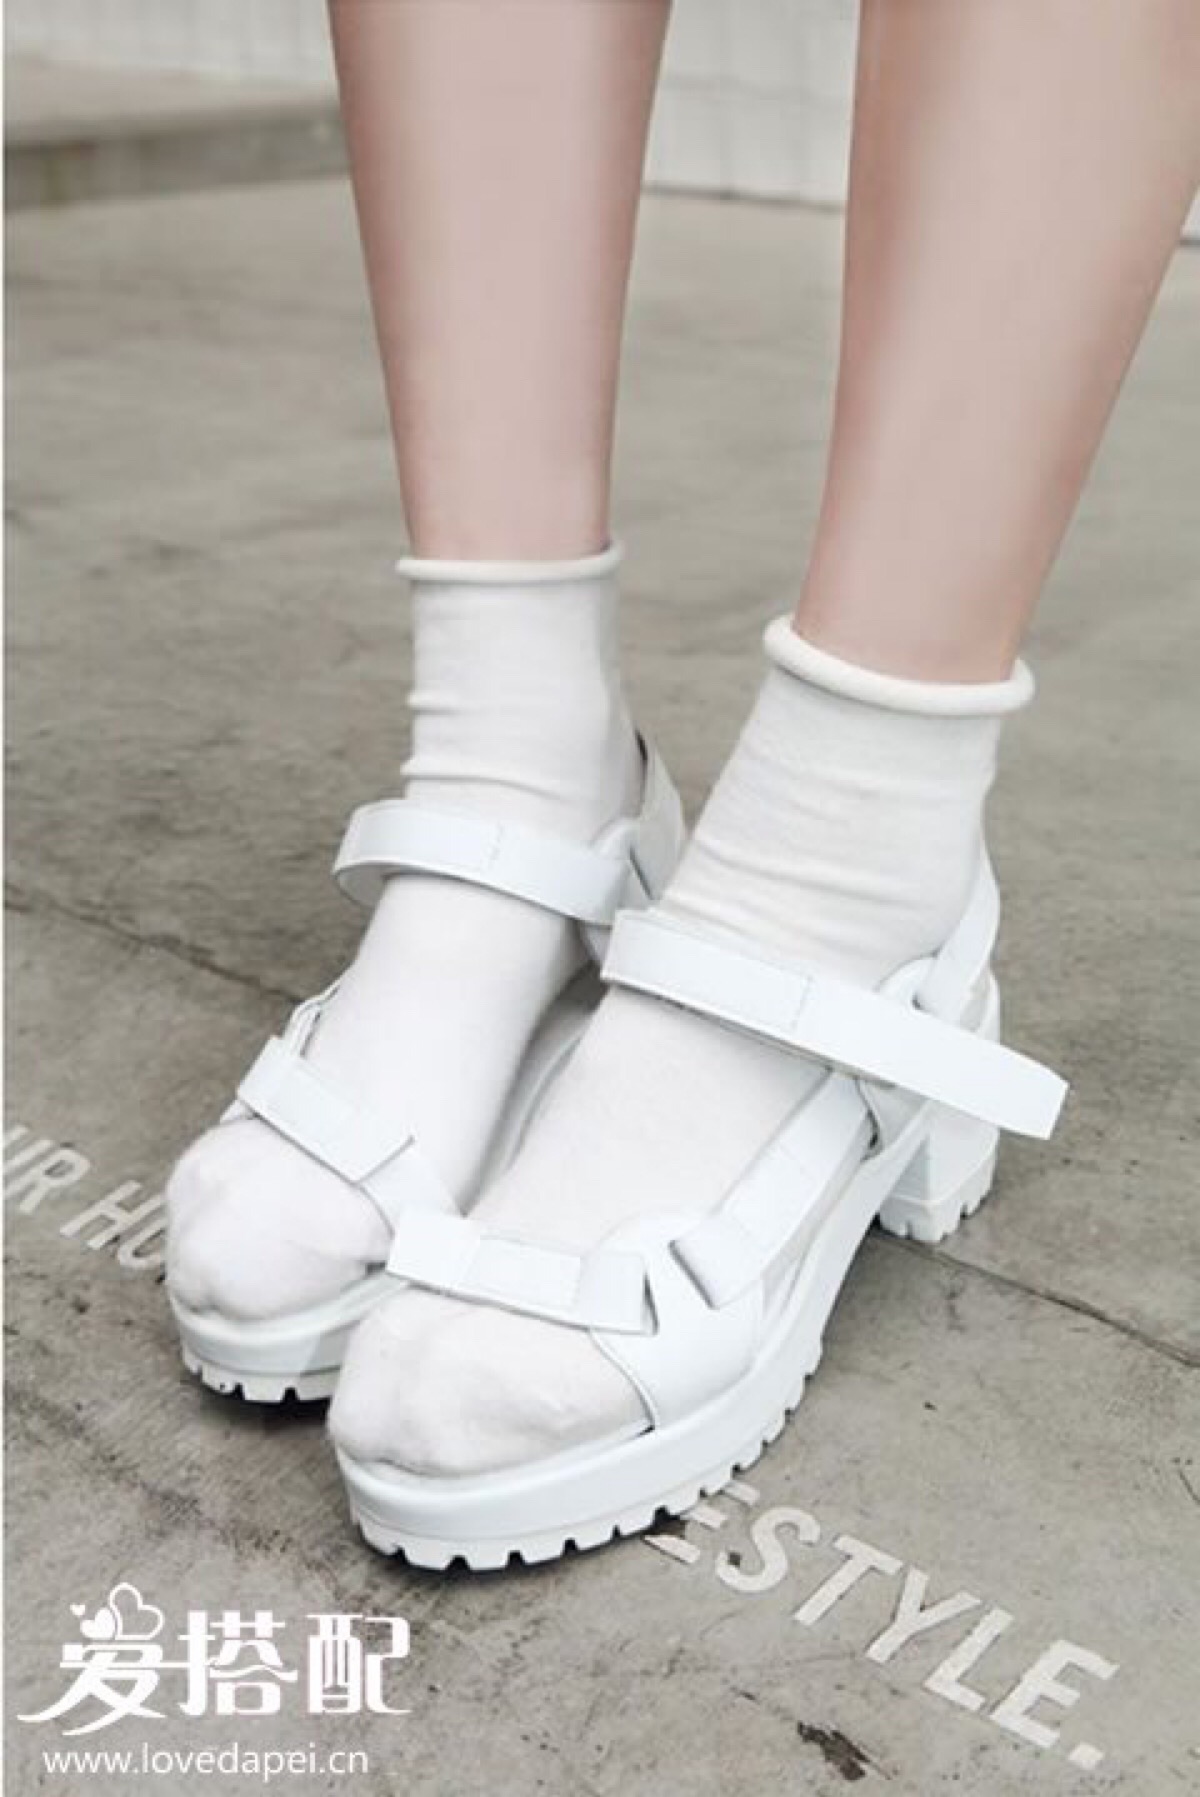 白色的袜子和鞋子同色搭配,如果你喜欢色彩的话,也可以试试其他的颜色